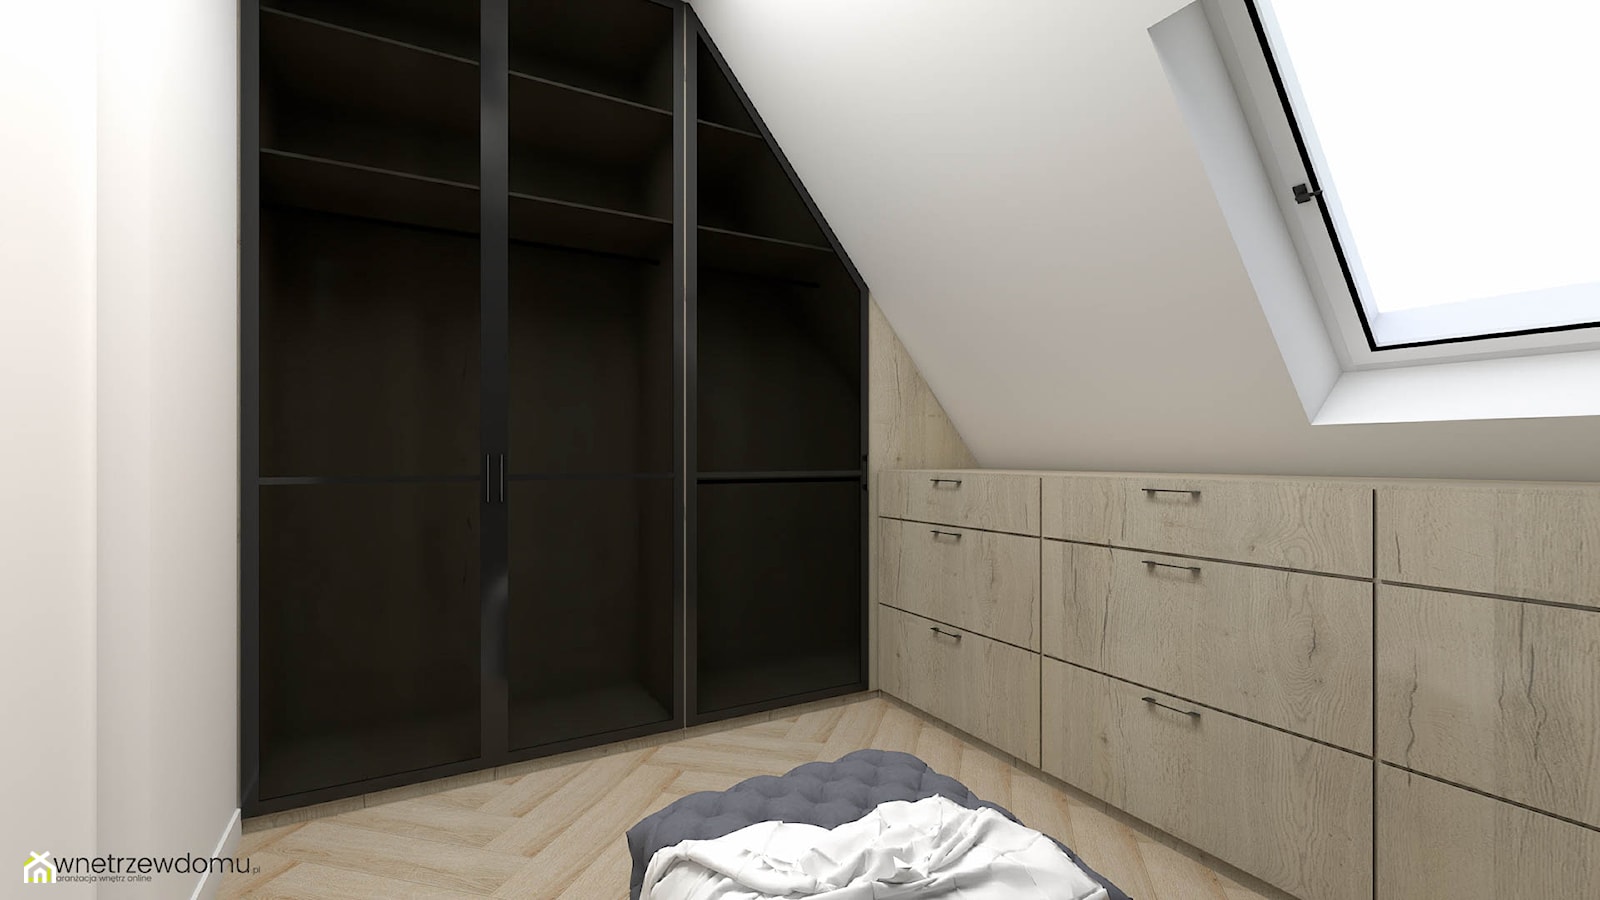 Sypialnia z garderobą na poddaszu - Garderoba, styl nowoczesny - zdjęcie od wnetrzewdomu - Homebook